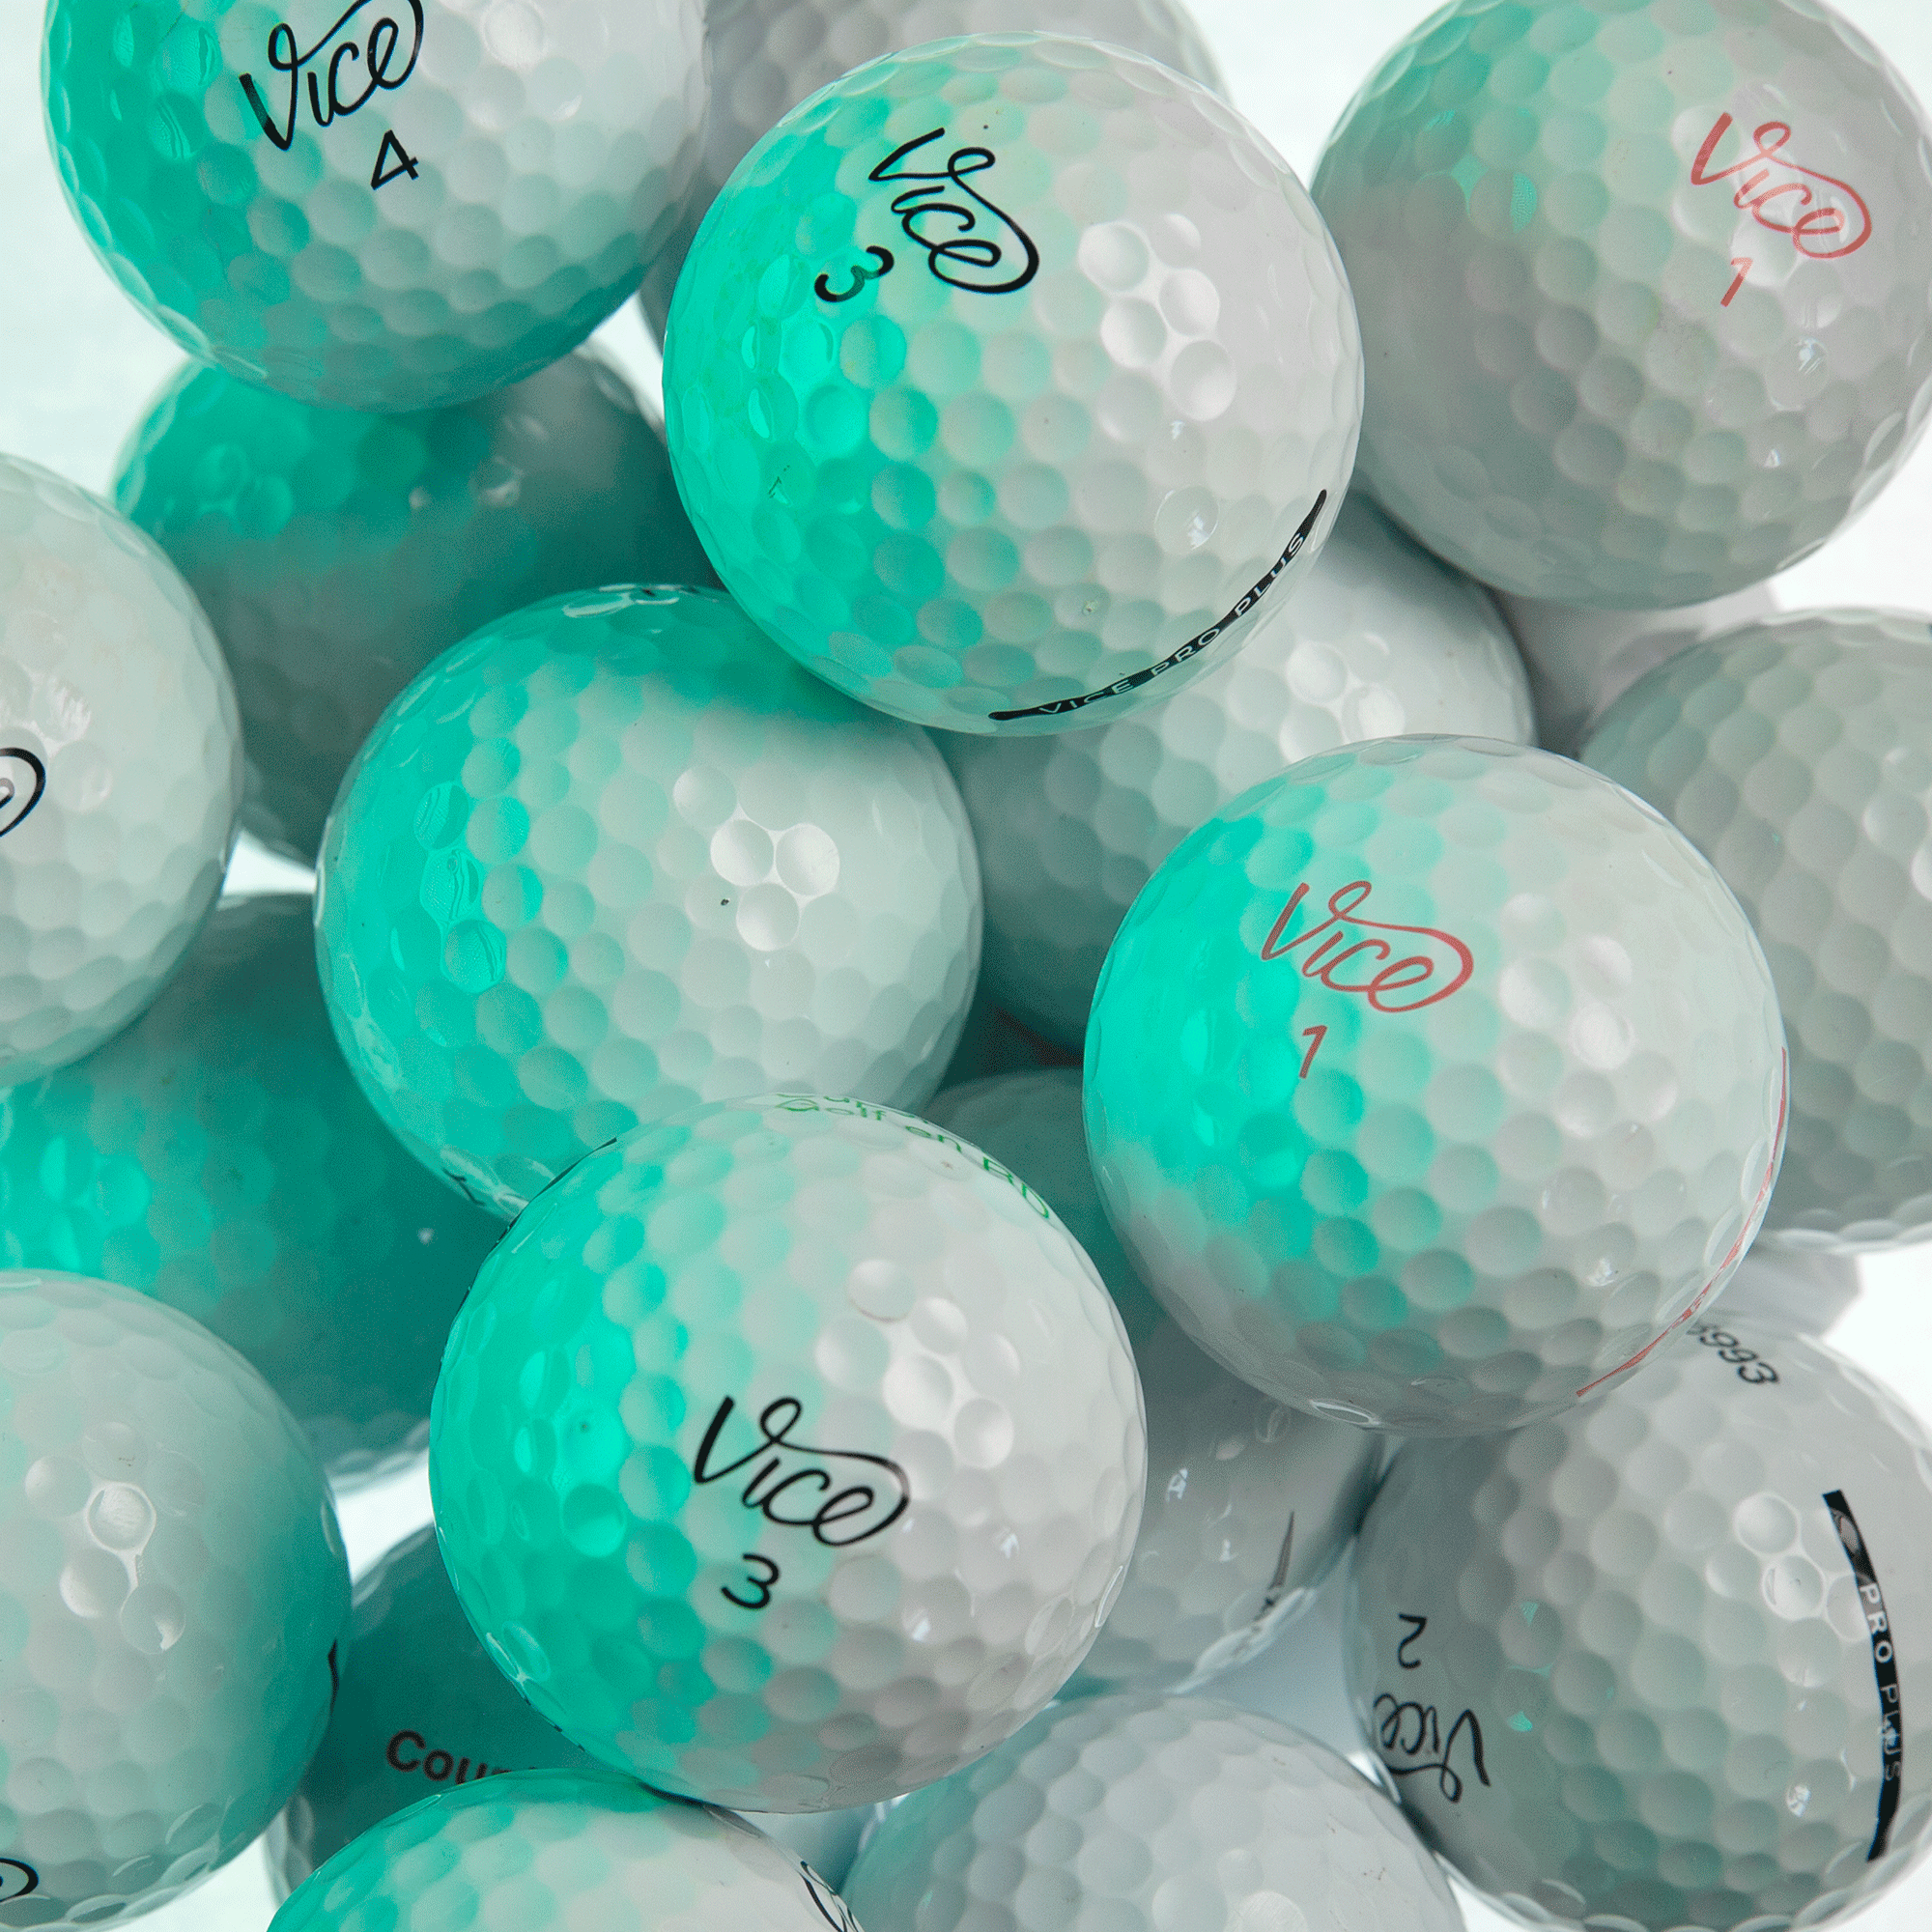 50 Balles De Golf - Mix modèles Premium - À Partir de 59,99€